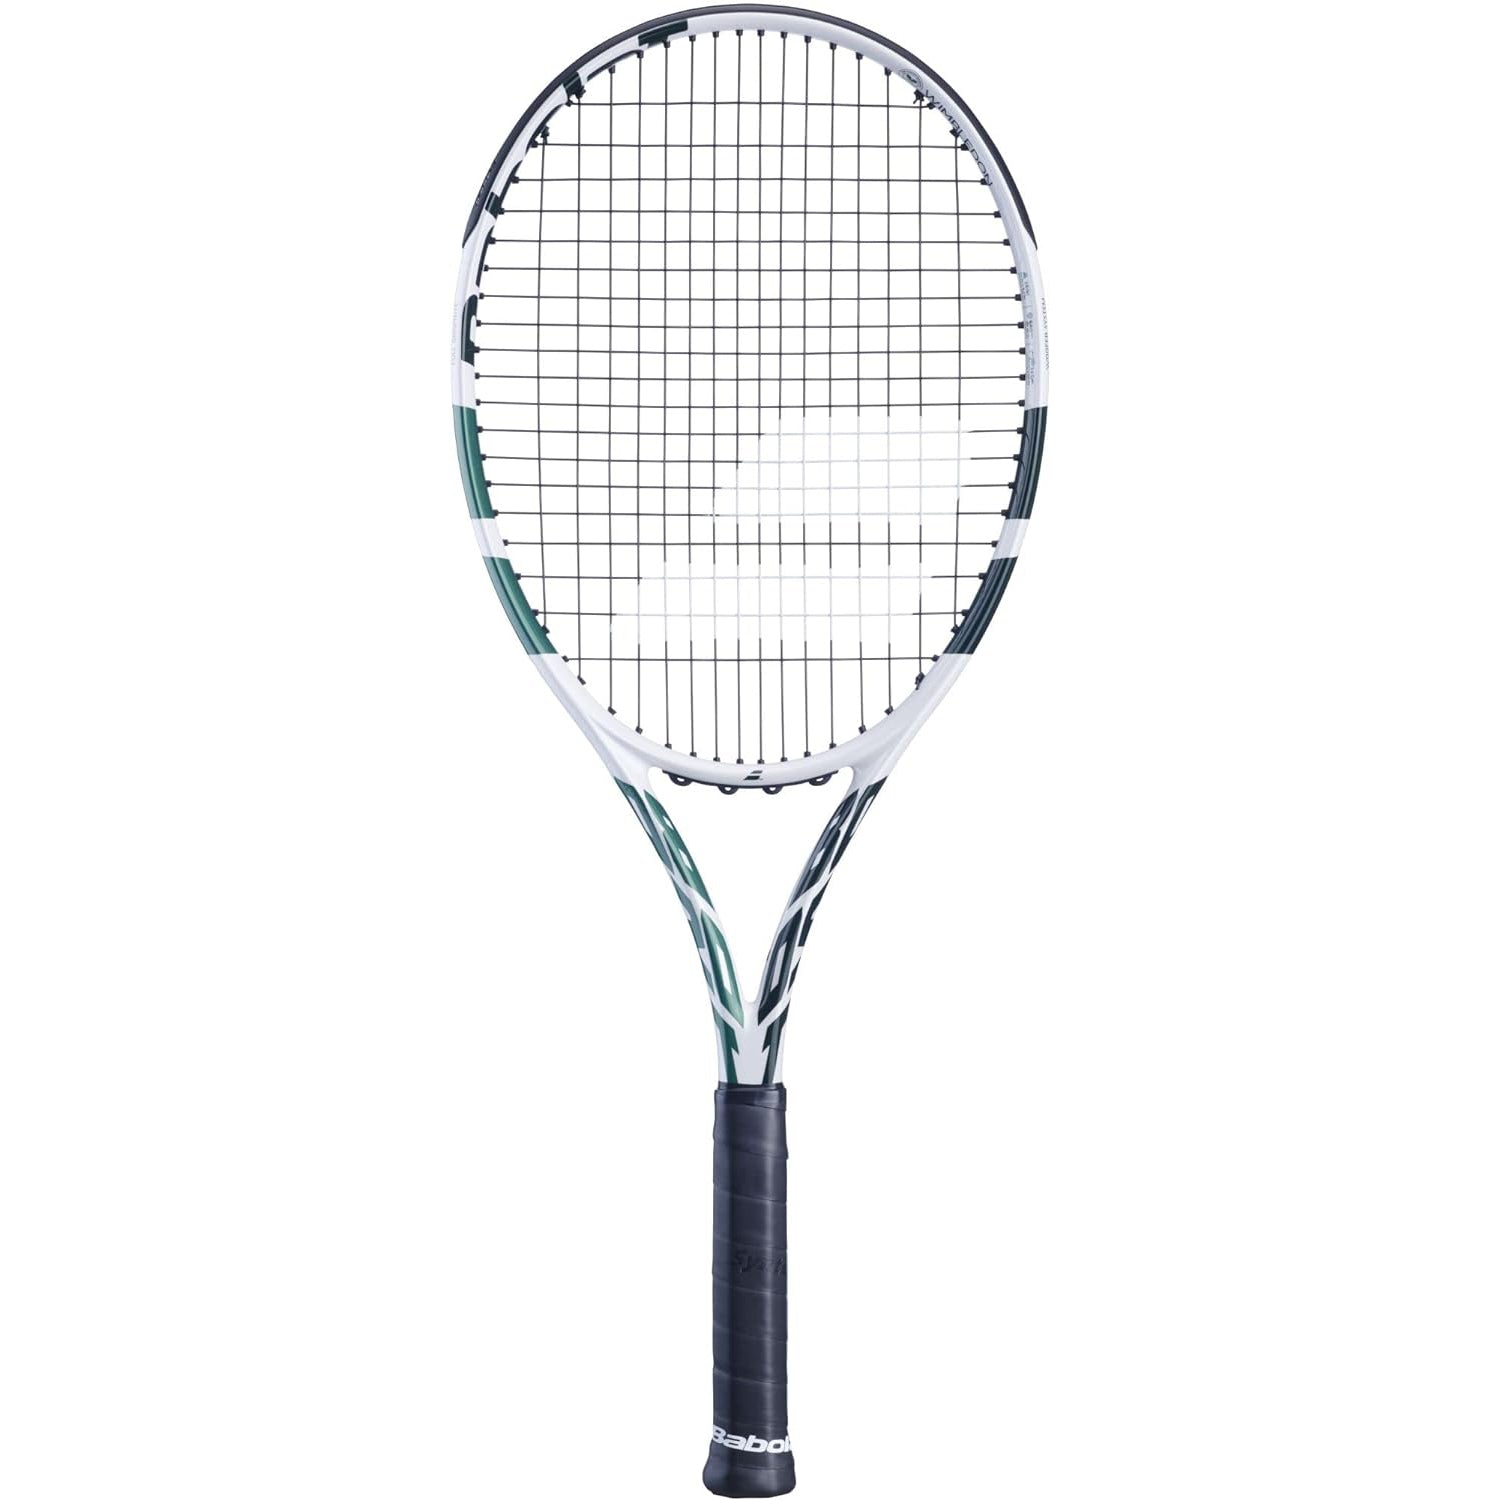 Babolat Boost Wimbledon S CV Strung Tennis Racquet, White/Green - Best Price online Prokicksports.com